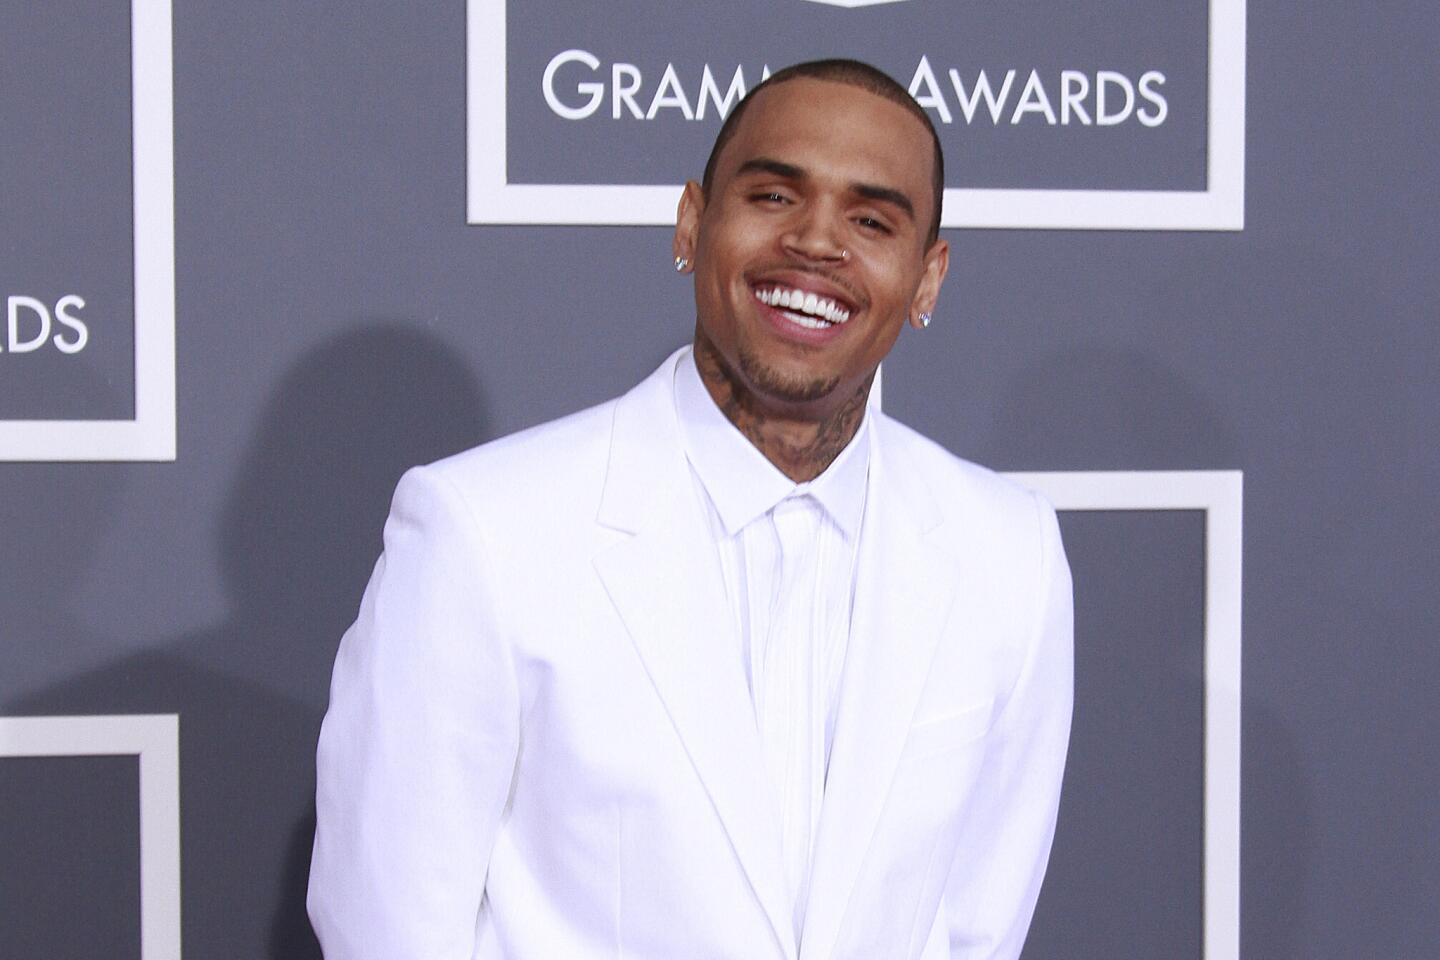 Chris Brown laughing